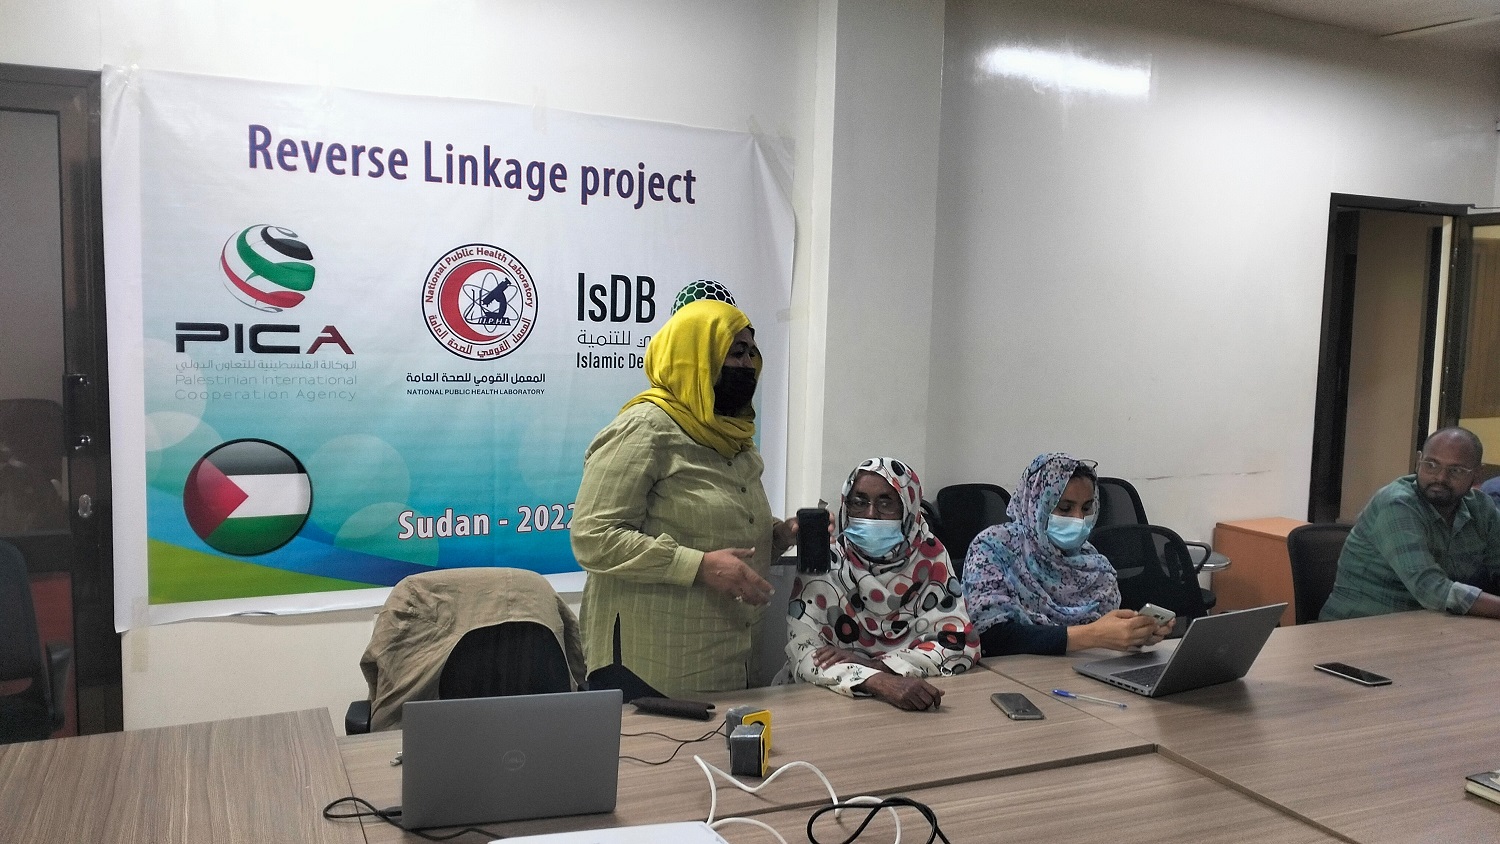 2022 – PICA Reverse Linkage Project in Sudan